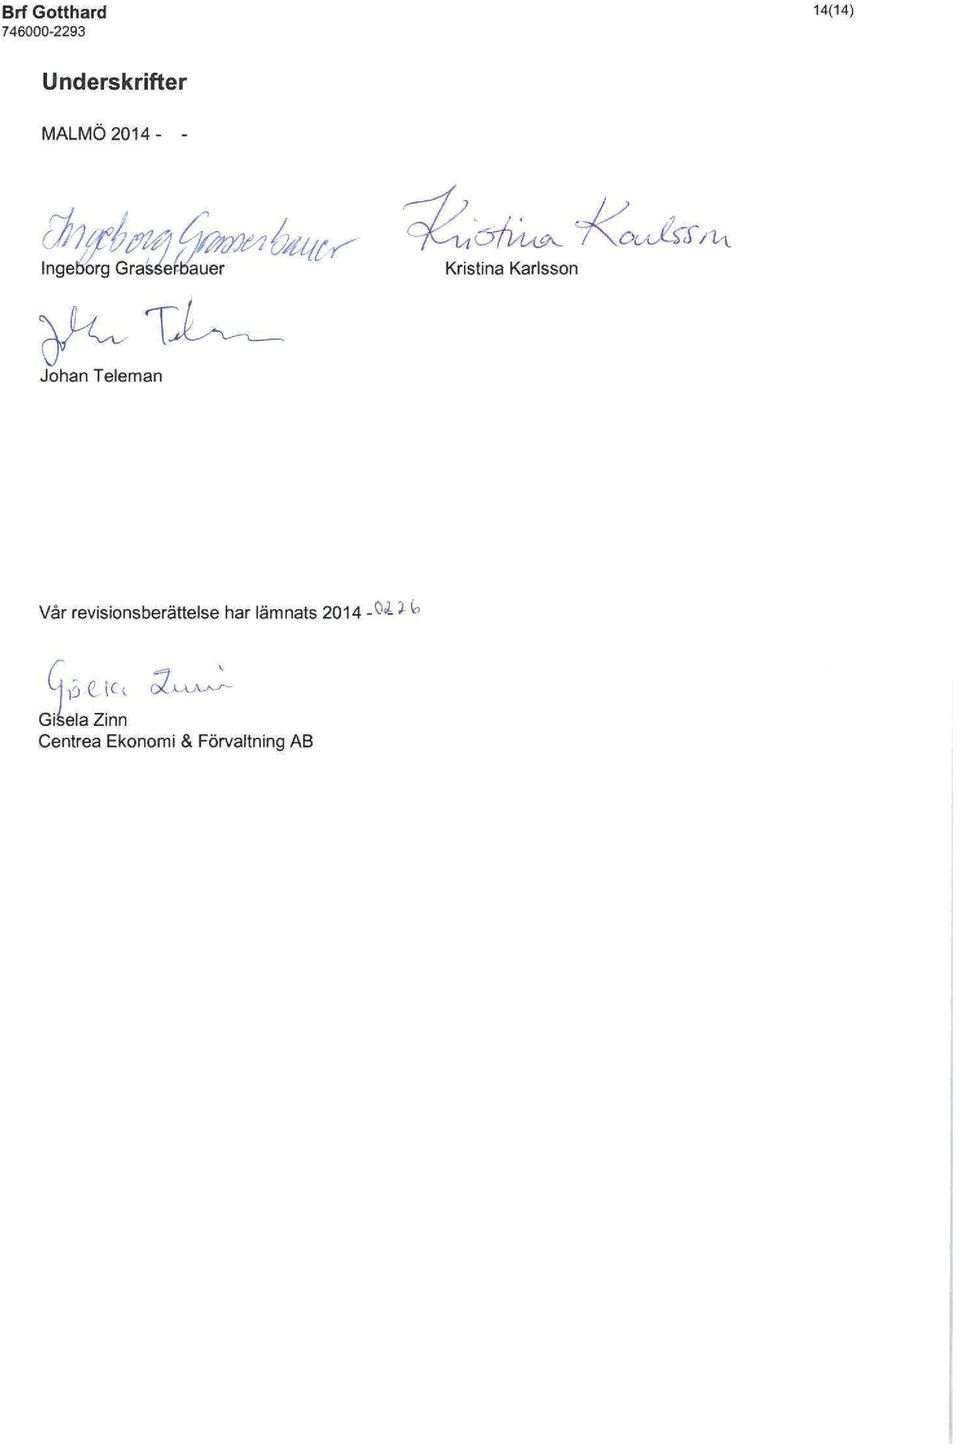 Johan Teleman Vår revisionsberättelse har lämnats 2014